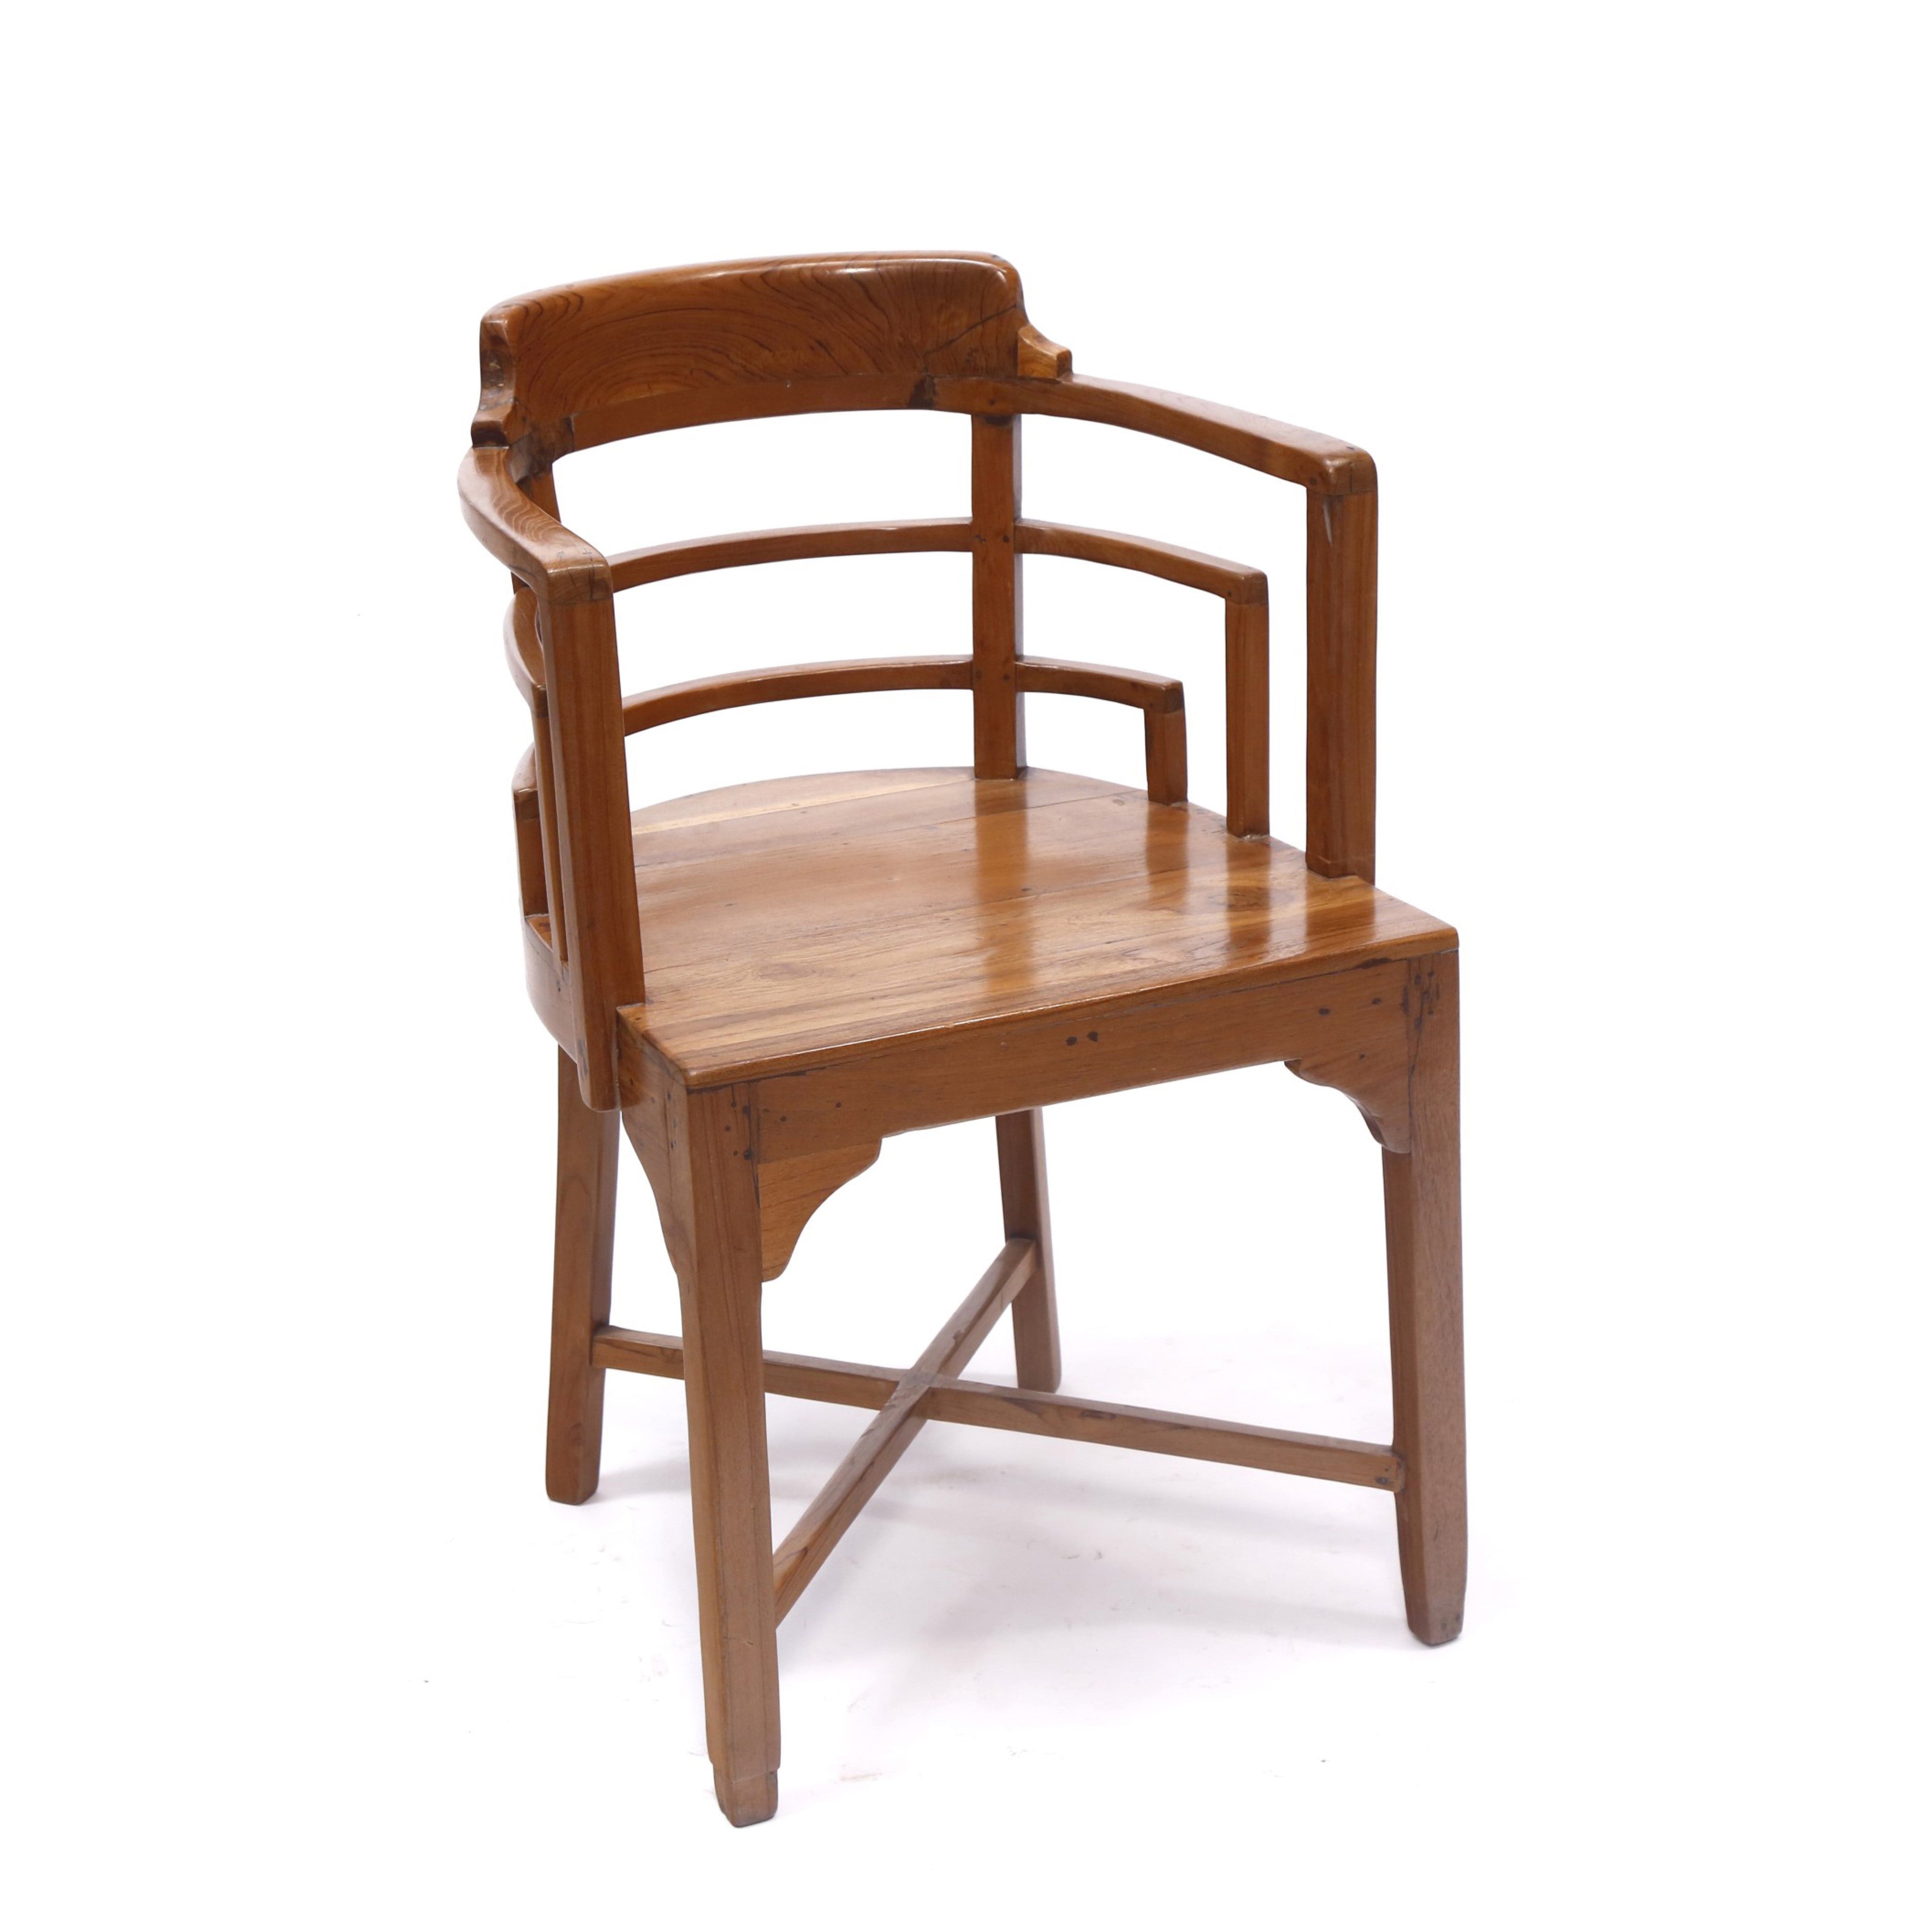 Teak Wood Semi-Circle Chair Arm Chair